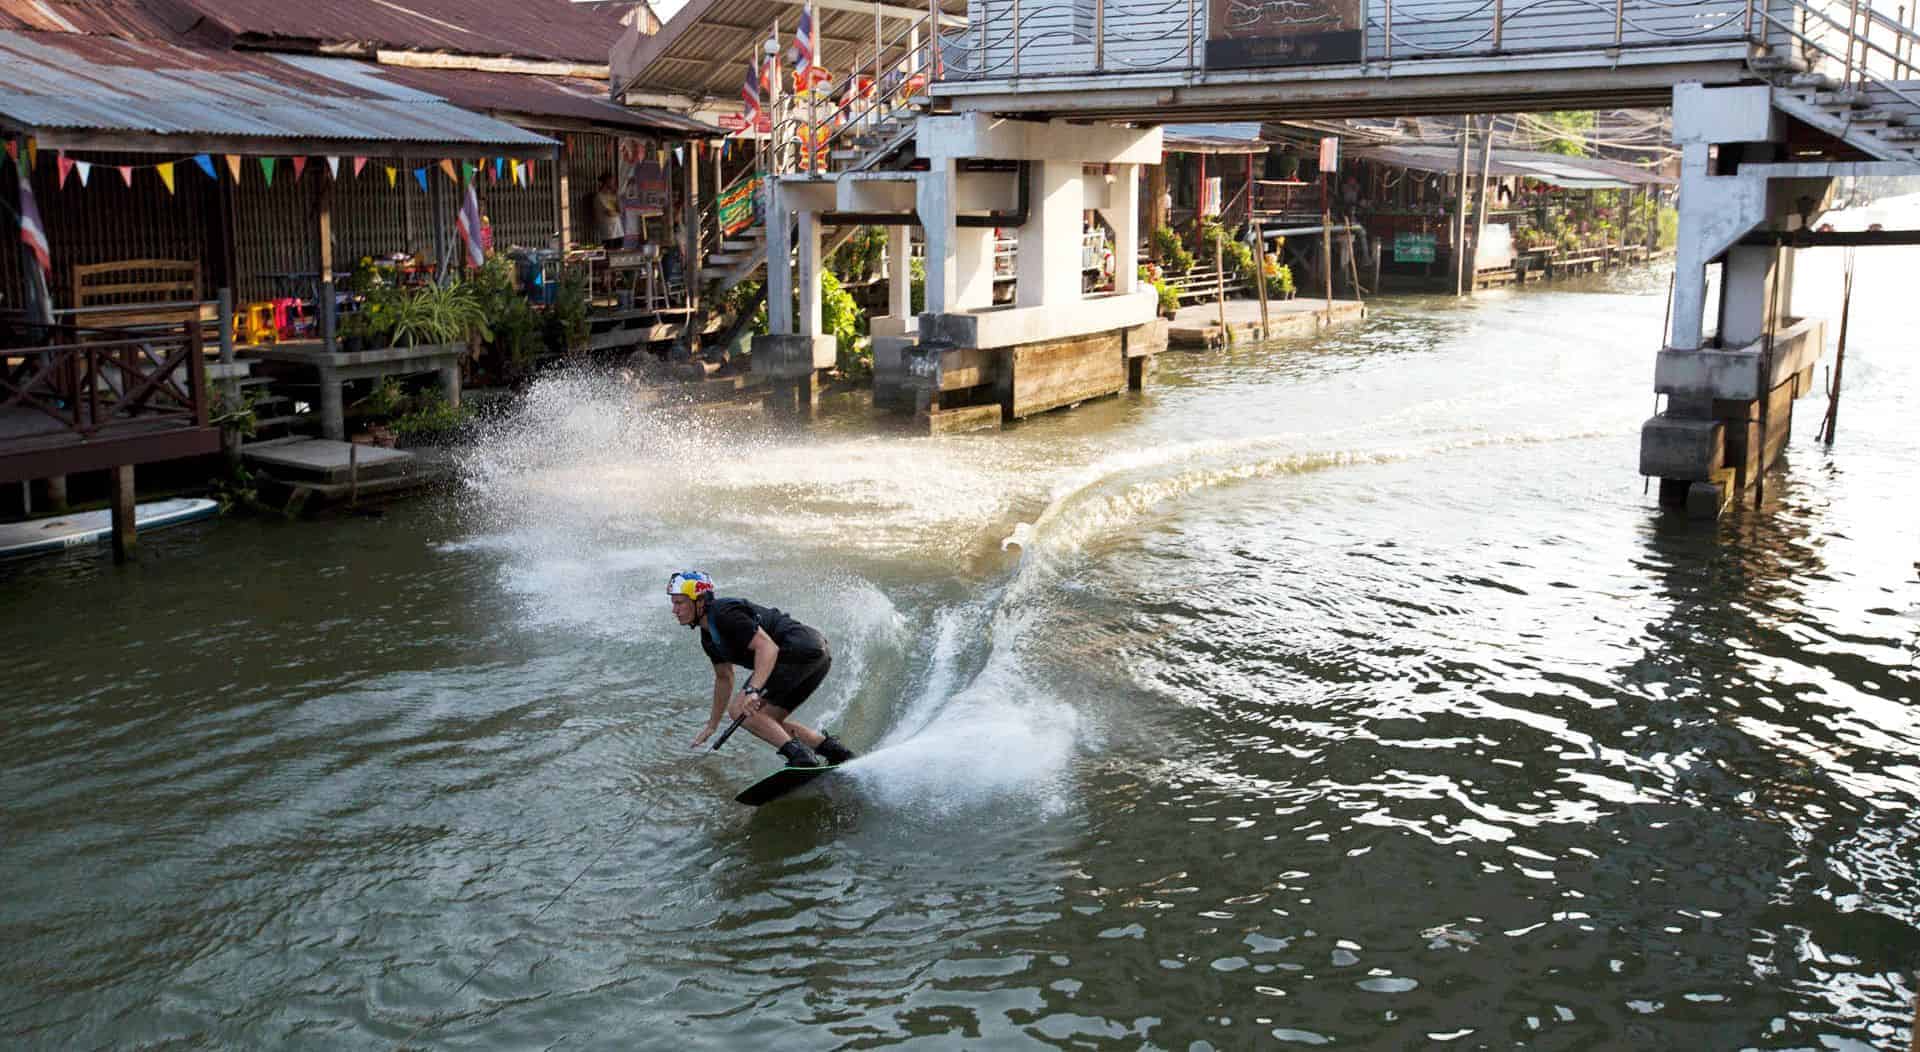 Wakeboarding cez plávajúce trhy v Bangkoku s Dominikom Gührsom